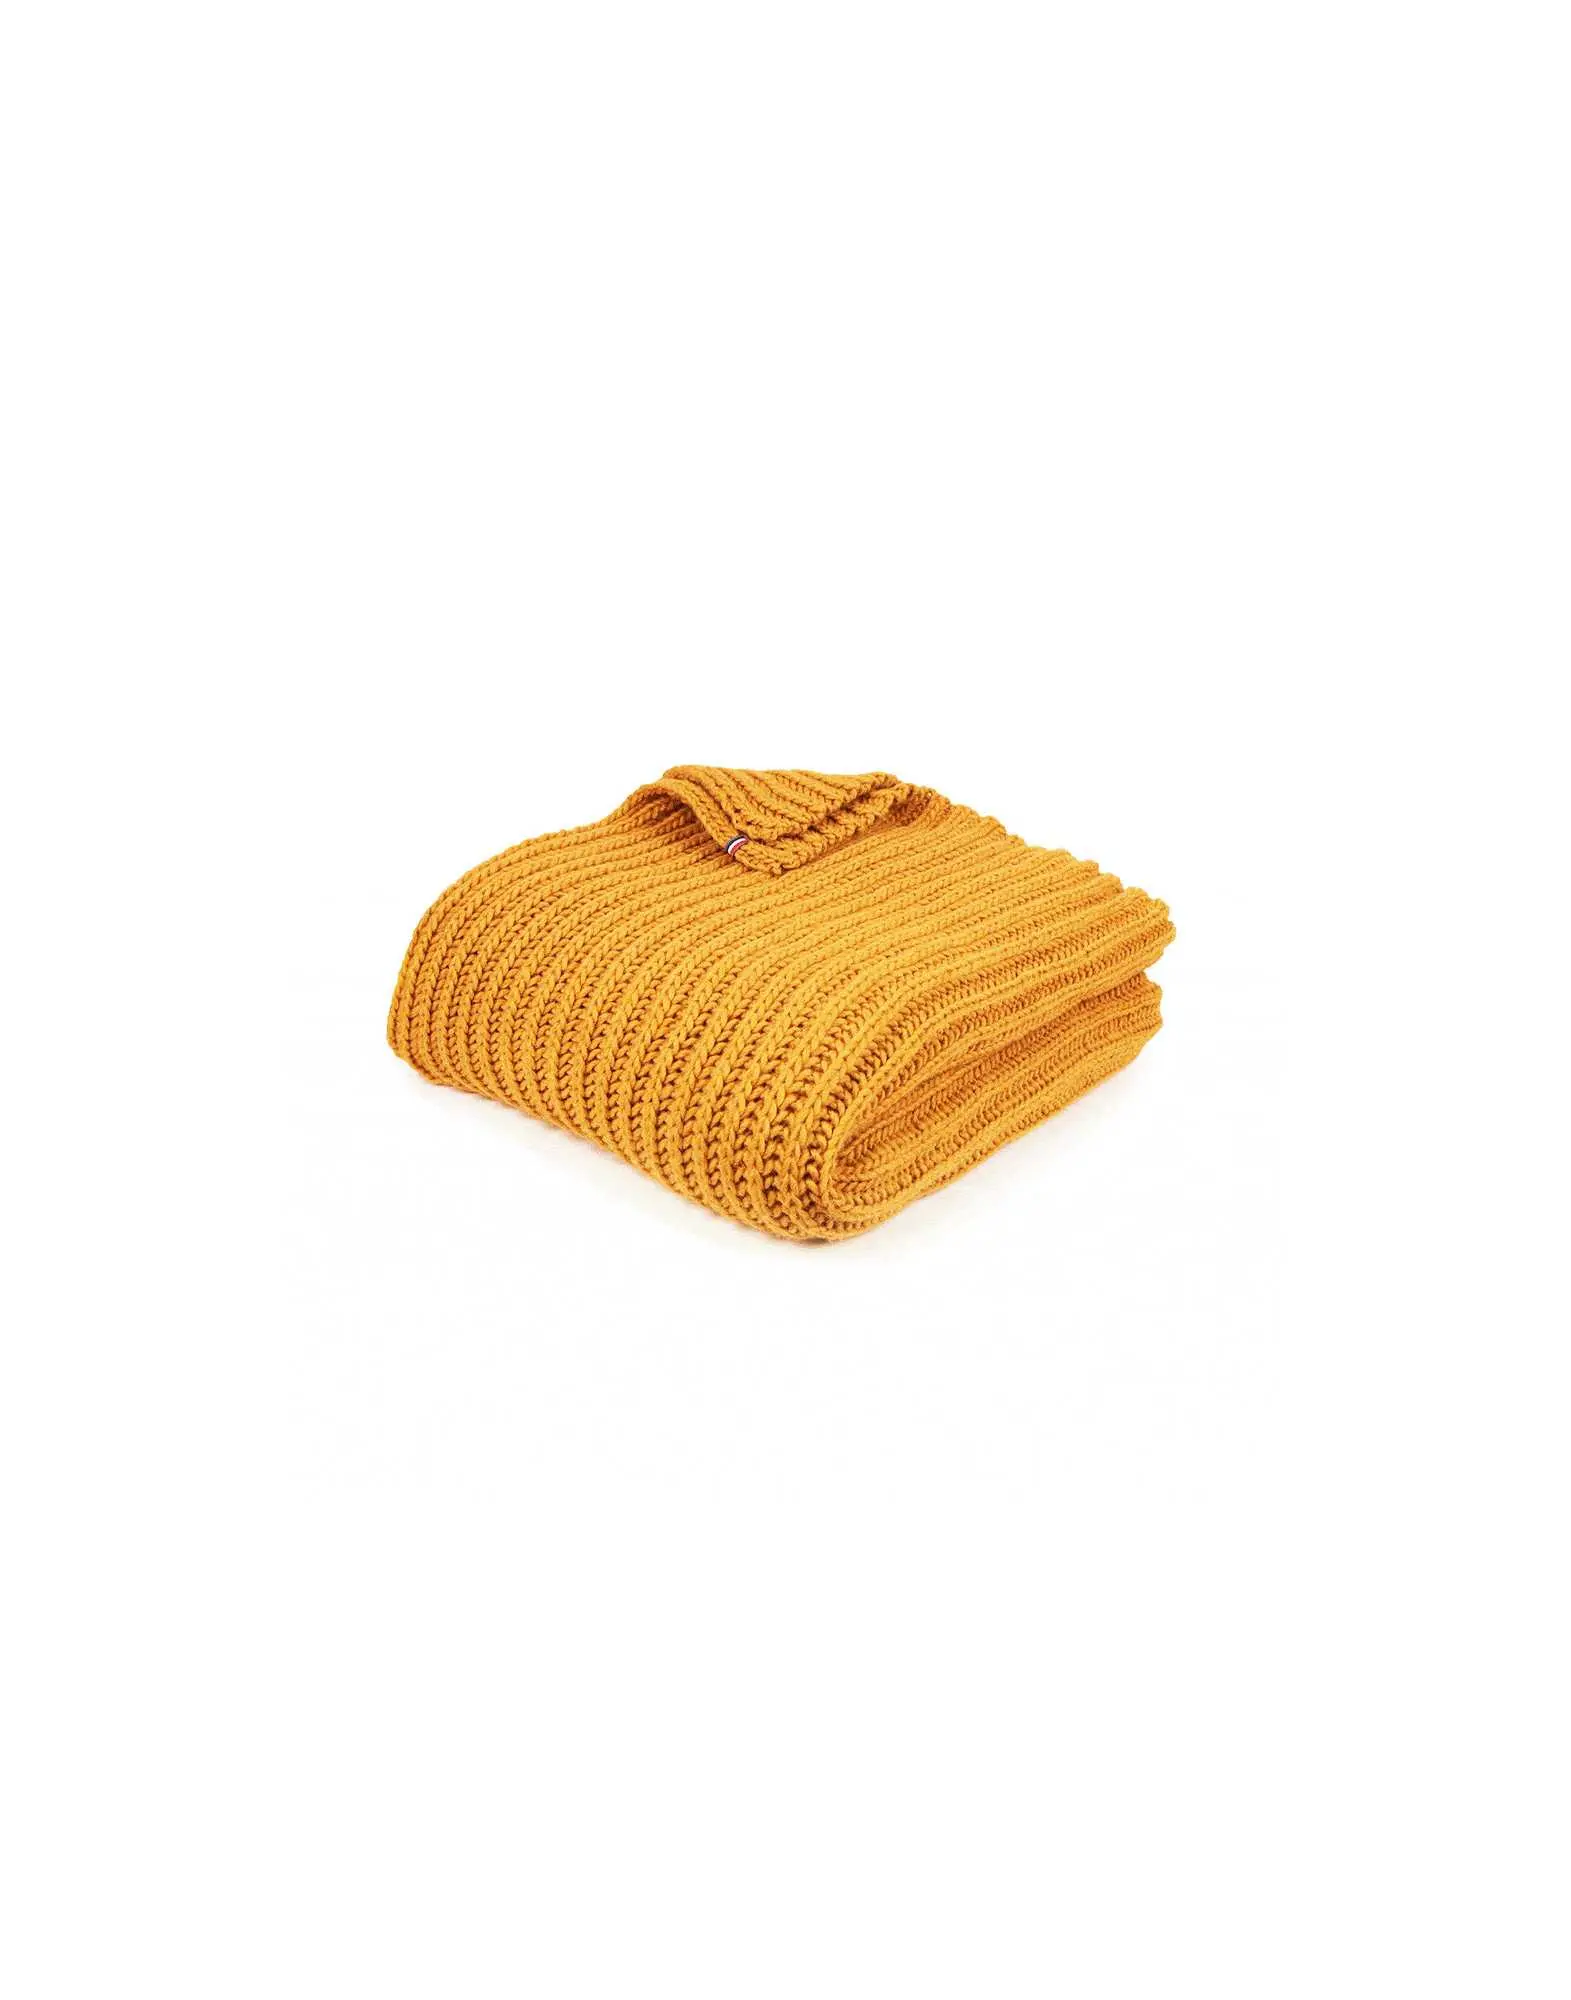 Chunky knit plaid sunshine | Lingerie le Chat